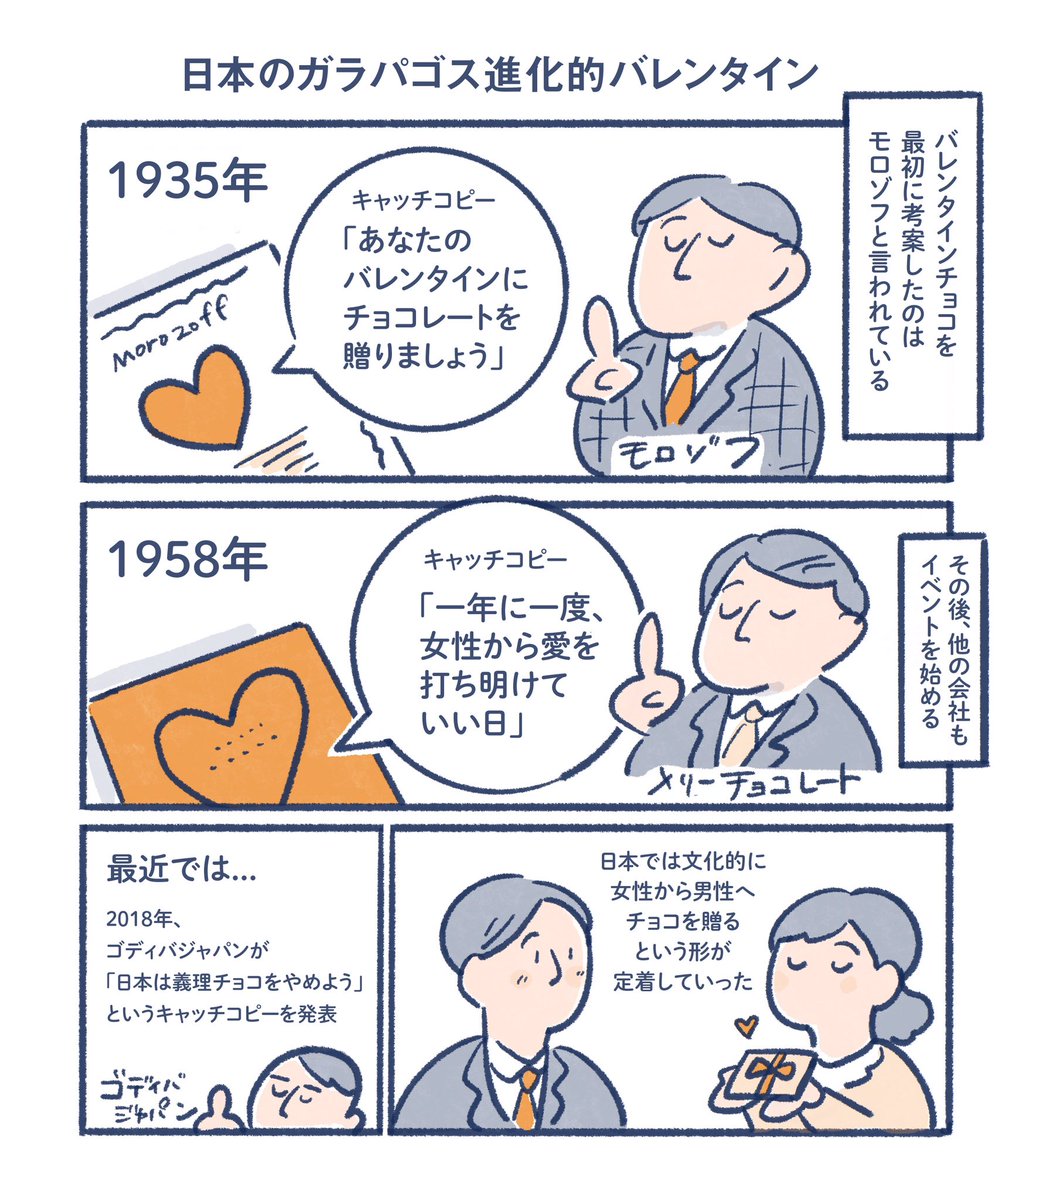 日本ではなんでバレンタインにチョコレートを贈るのかについてのマンガです🍫
(海外では花やカードが多い)

いろいろ調べてみるに、日本の行事はお菓子会社のPRをそのまま受け入れてるものが多いように思います

#マンガ
#イラスト 